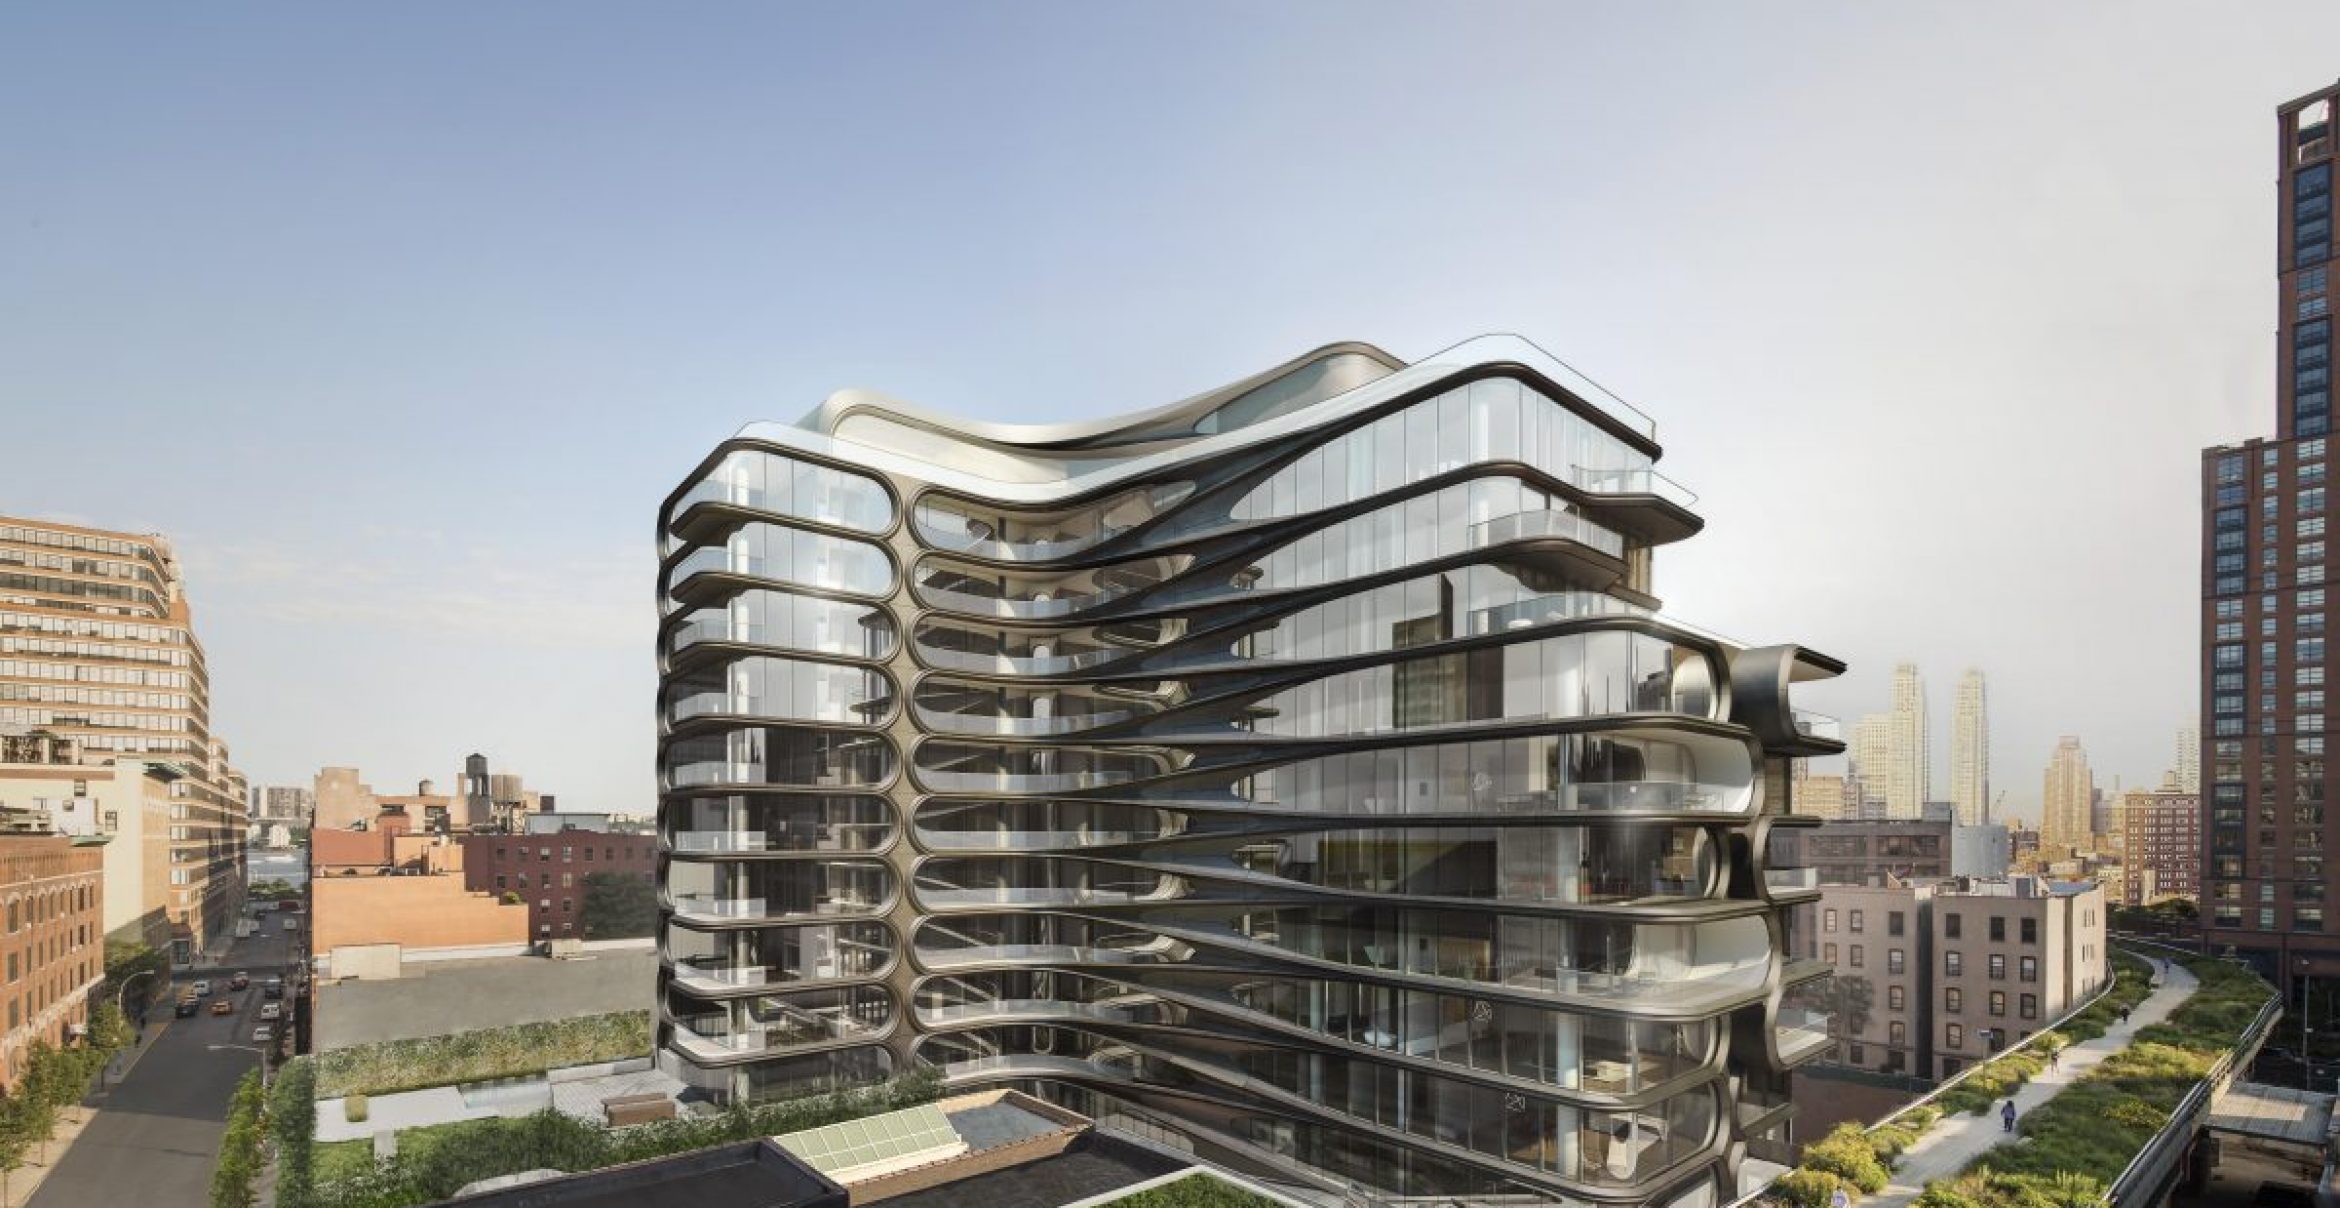 Architekturperle: Das neue Projekt der Stararchitektin Zaha Hadid kann sich sehen lassen